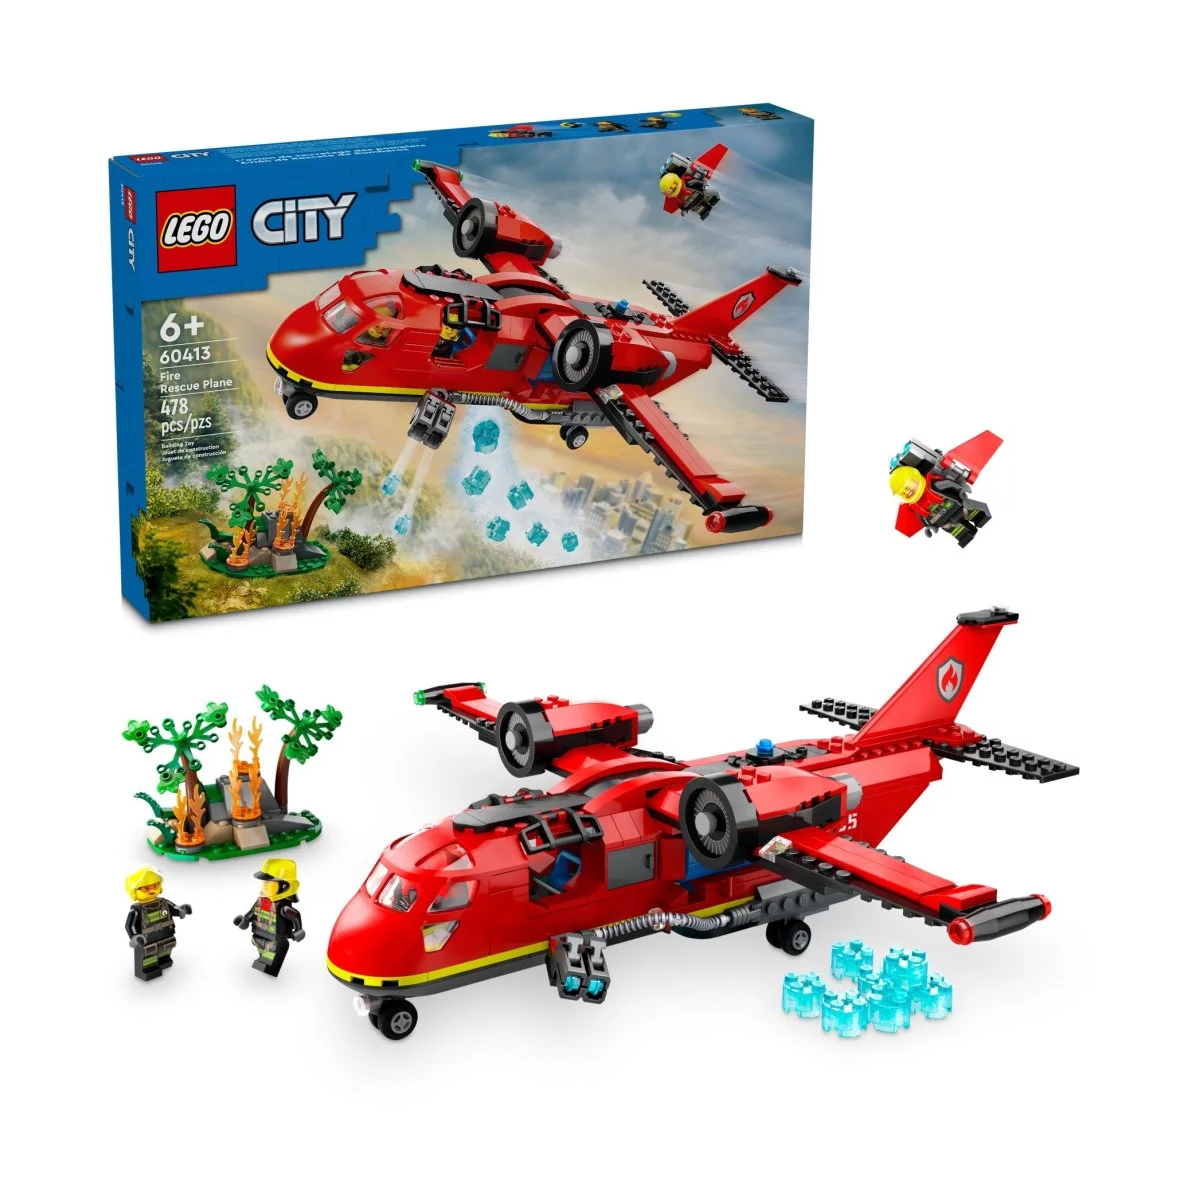 Конструктор Lego City Fire Rescue Plane 60413, 478 деталей игрушка конструктор спасательный внедорожник для зверей lego city wildlife 60301 4 157 элементов